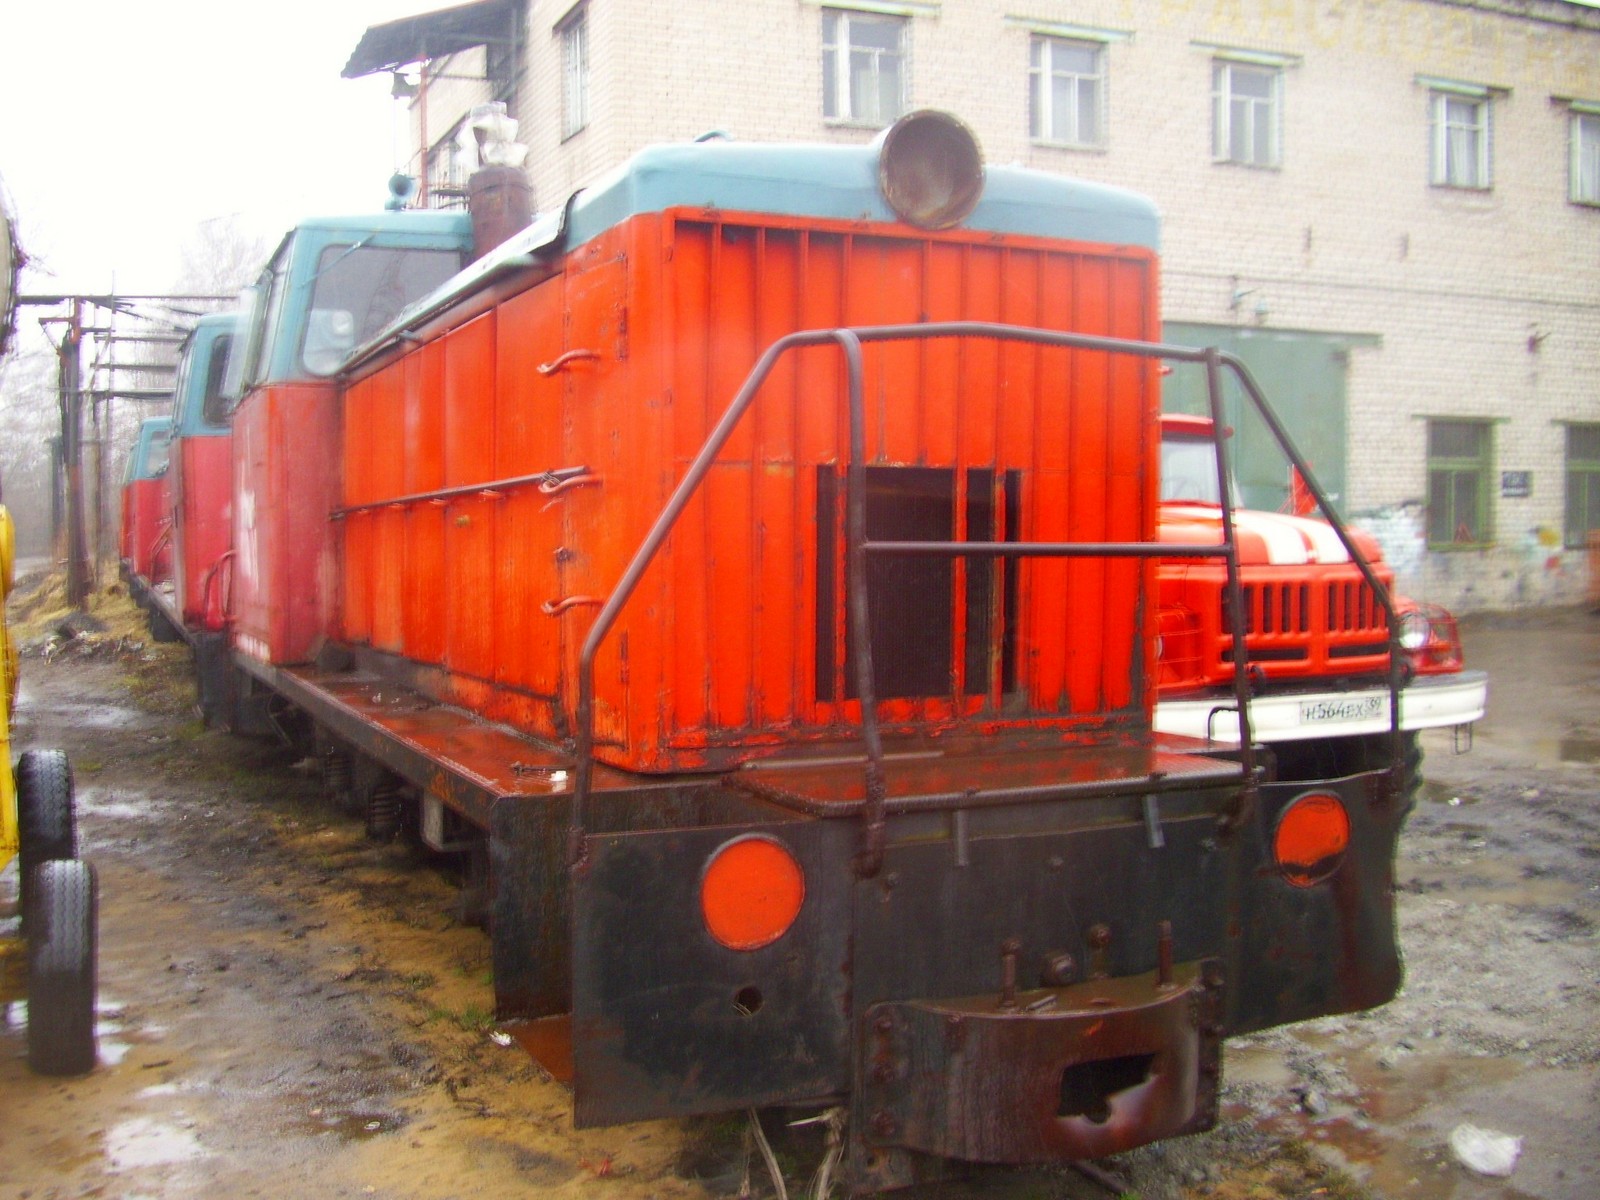 Узкоколейная железная дорога Калининградского целлюлозно-бумажного комбината  — фотографии, сделанные в 2011 году (часть 2)